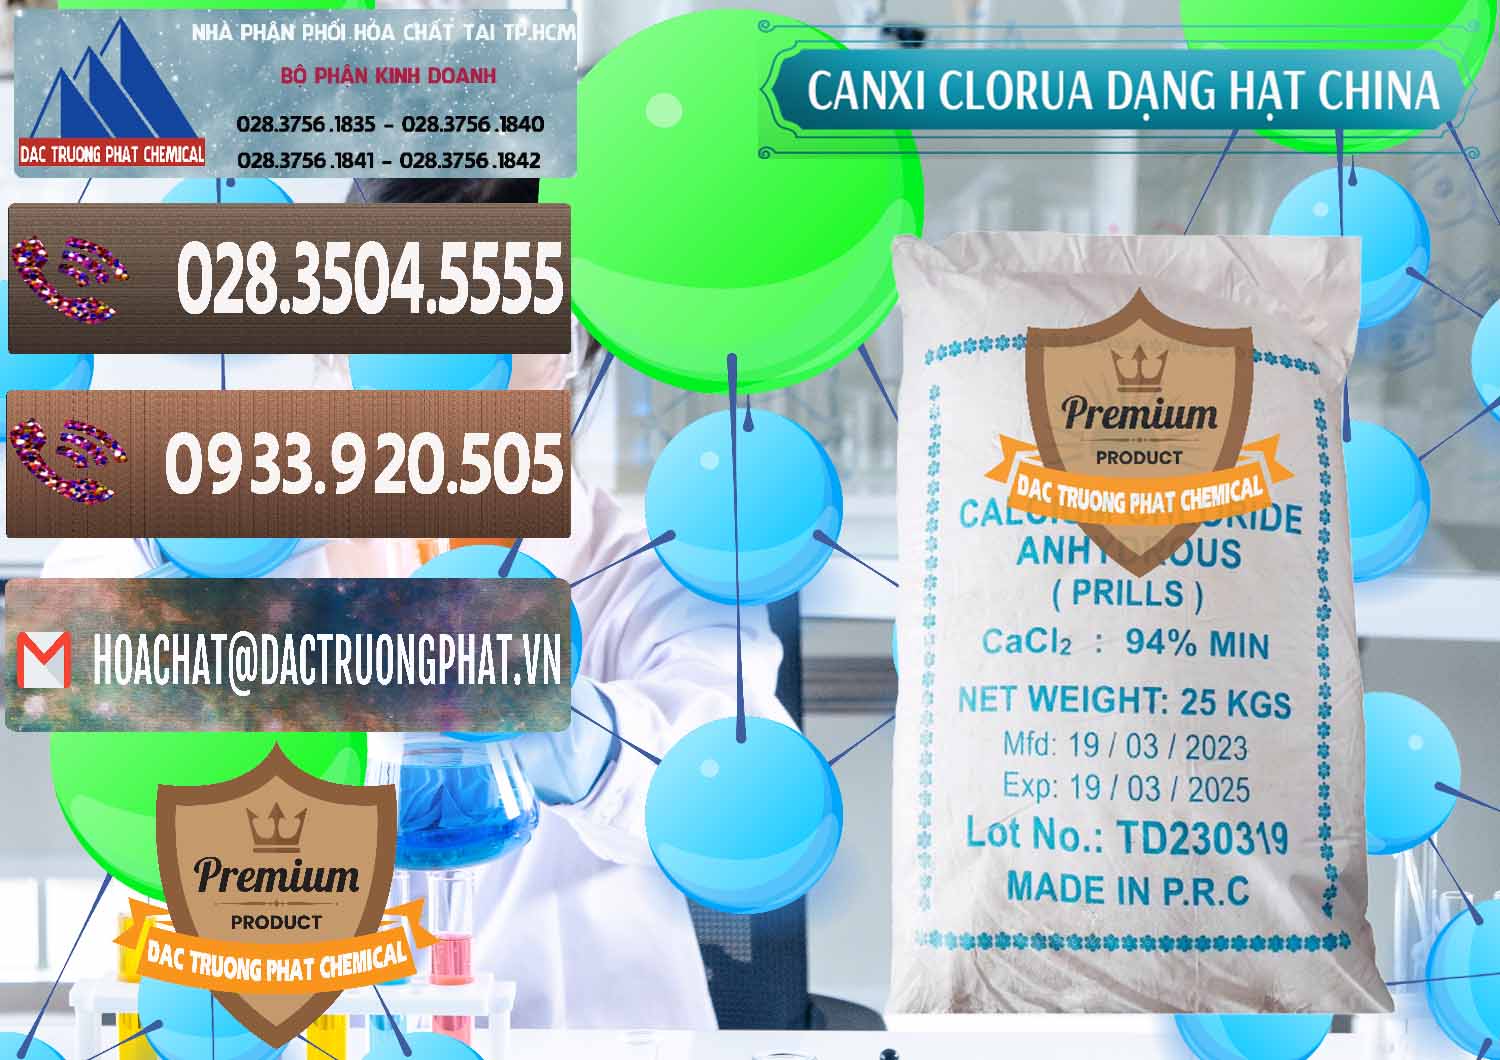 Nhà cung cấp _ bán CaCl2 – Canxi Clorua 94% Dạng Hạt Trung Quốc China - 0373 - Công ty chuyên phân phối và nhập khẩu hóa chất tại TP.HCM - hoachatviet.net